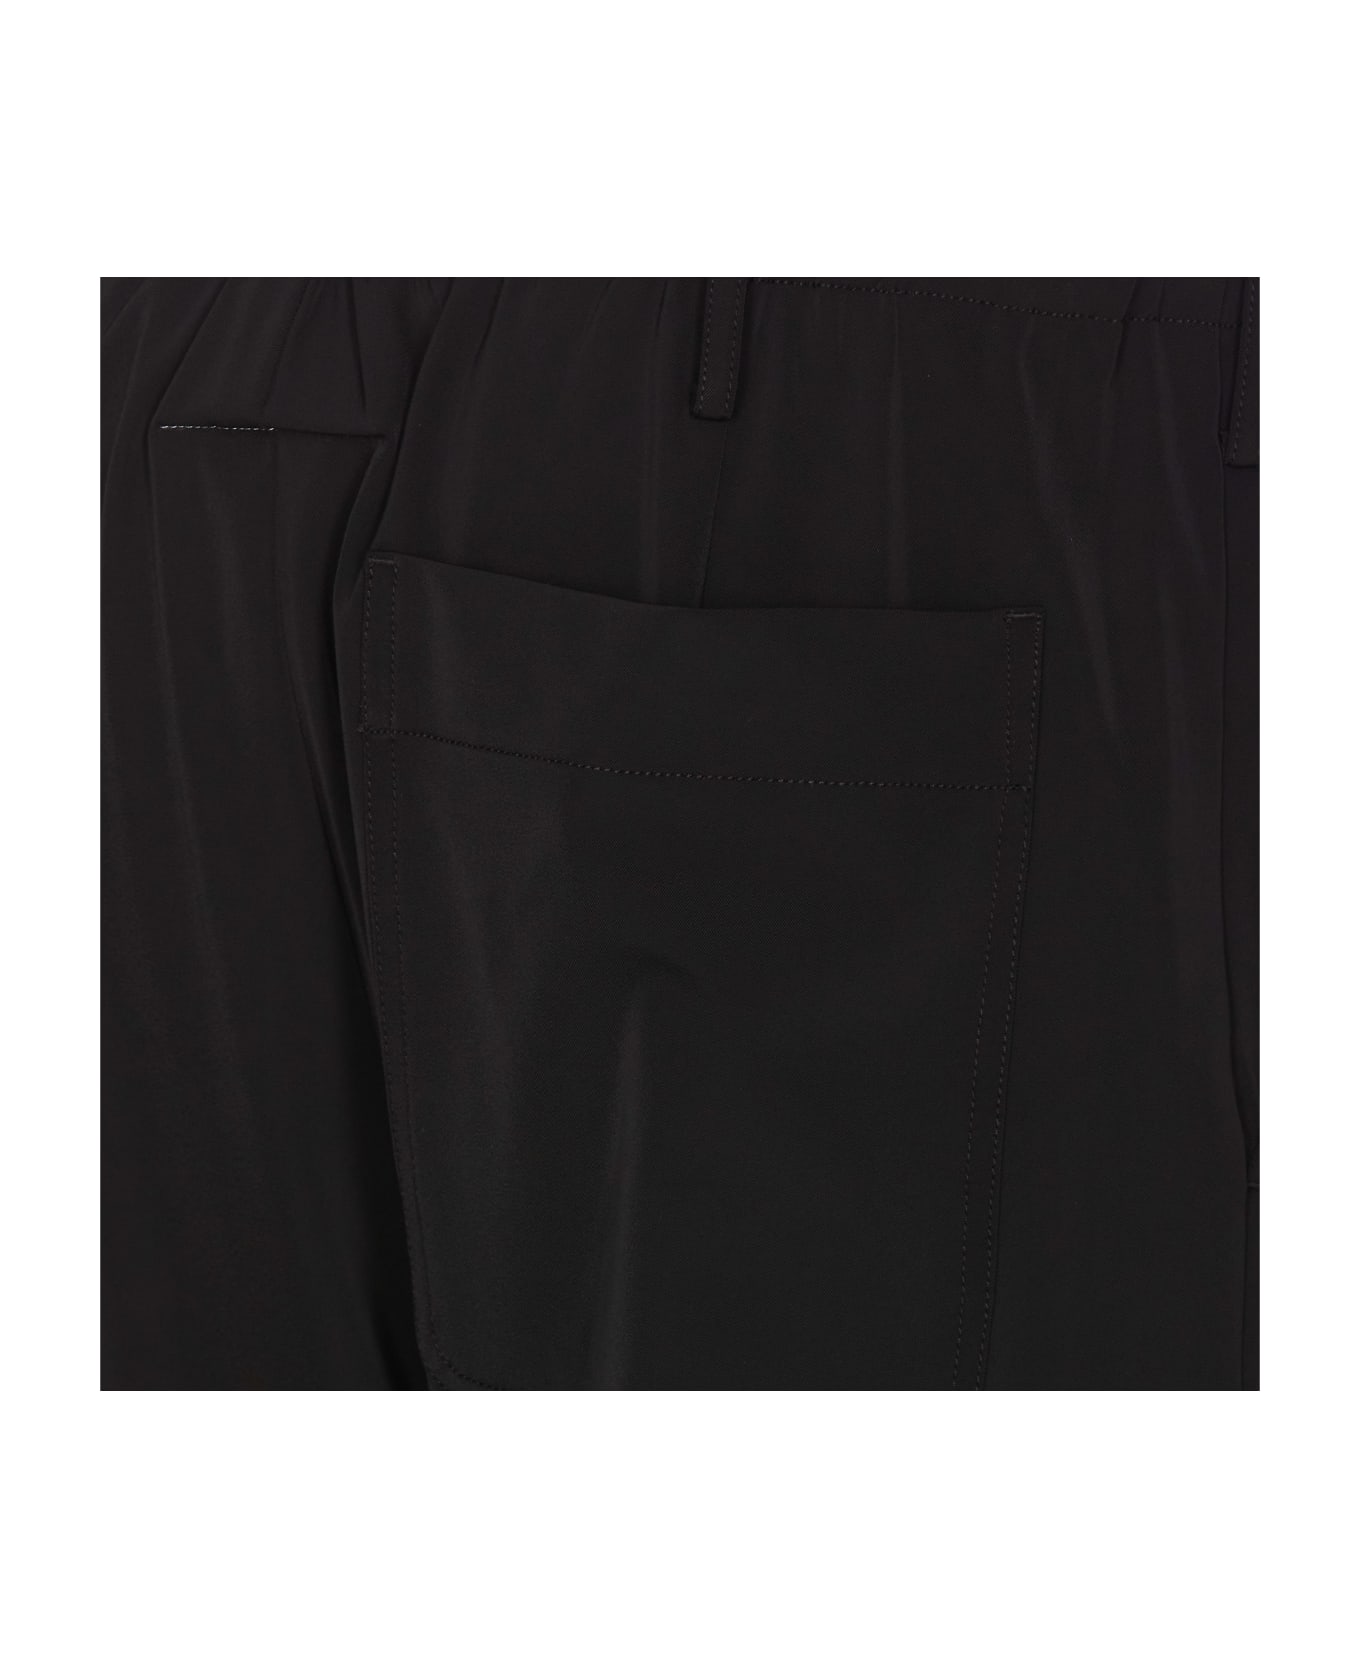 MM6 Maison Margiela Pantalone Black Satin Baggy Pant - Nero ボトムス